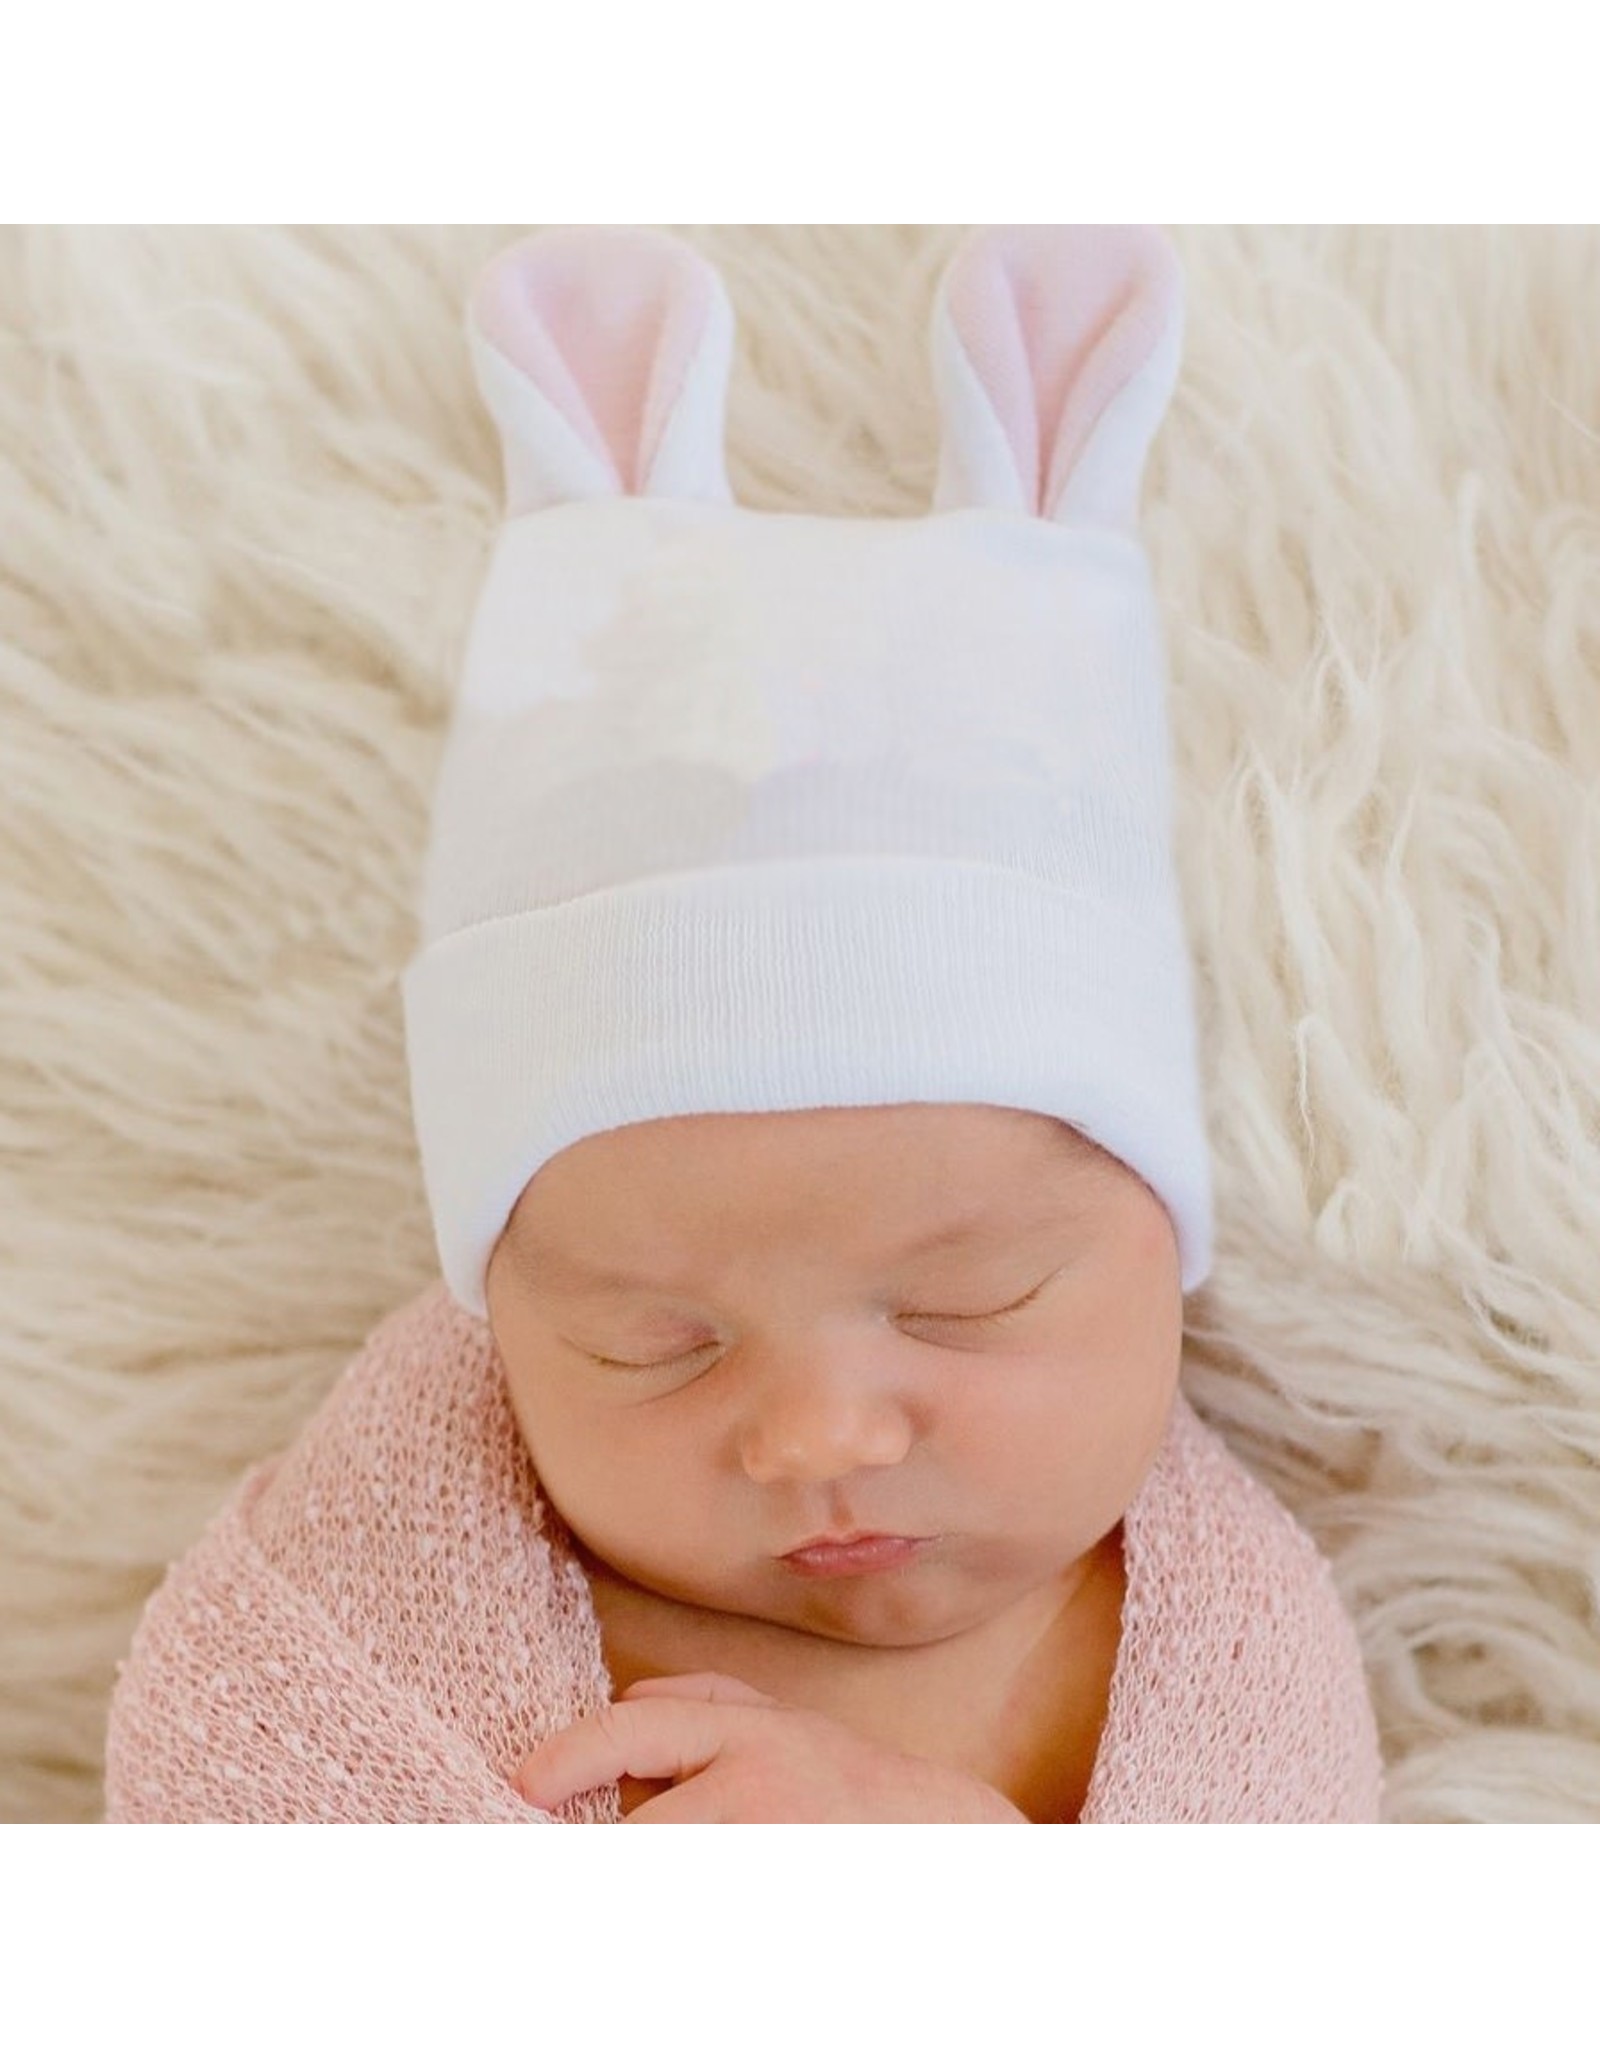 ilybean Nursery Beanie - Pink Bunny Ears